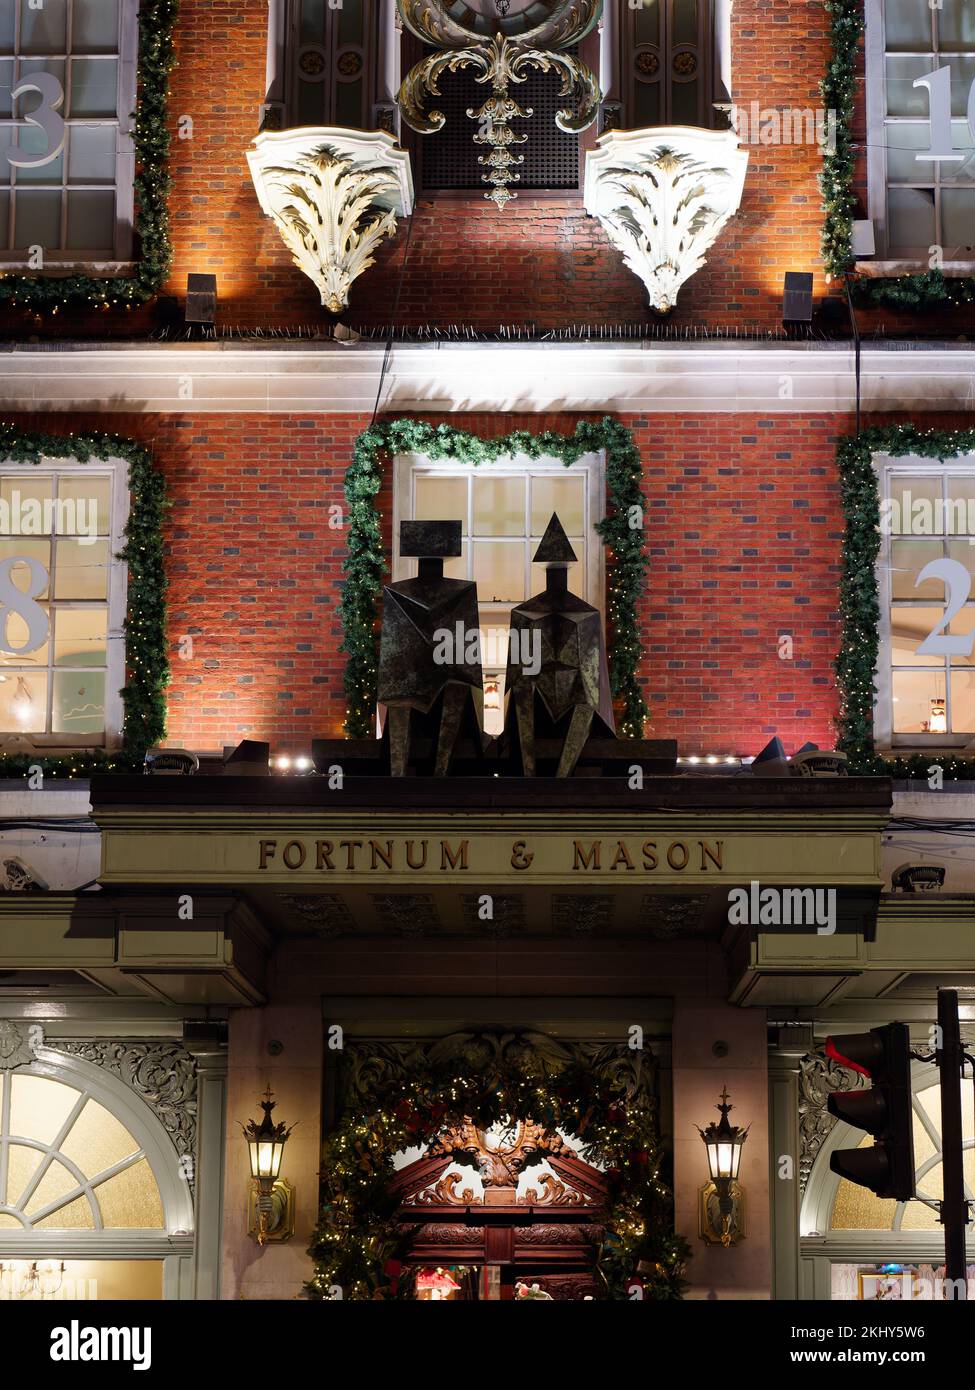 Fortnum et Mason Department Store Affichage de Noël façade montrant les symboles emblématiques du magasin, Piccadilly London. Banque D'Images